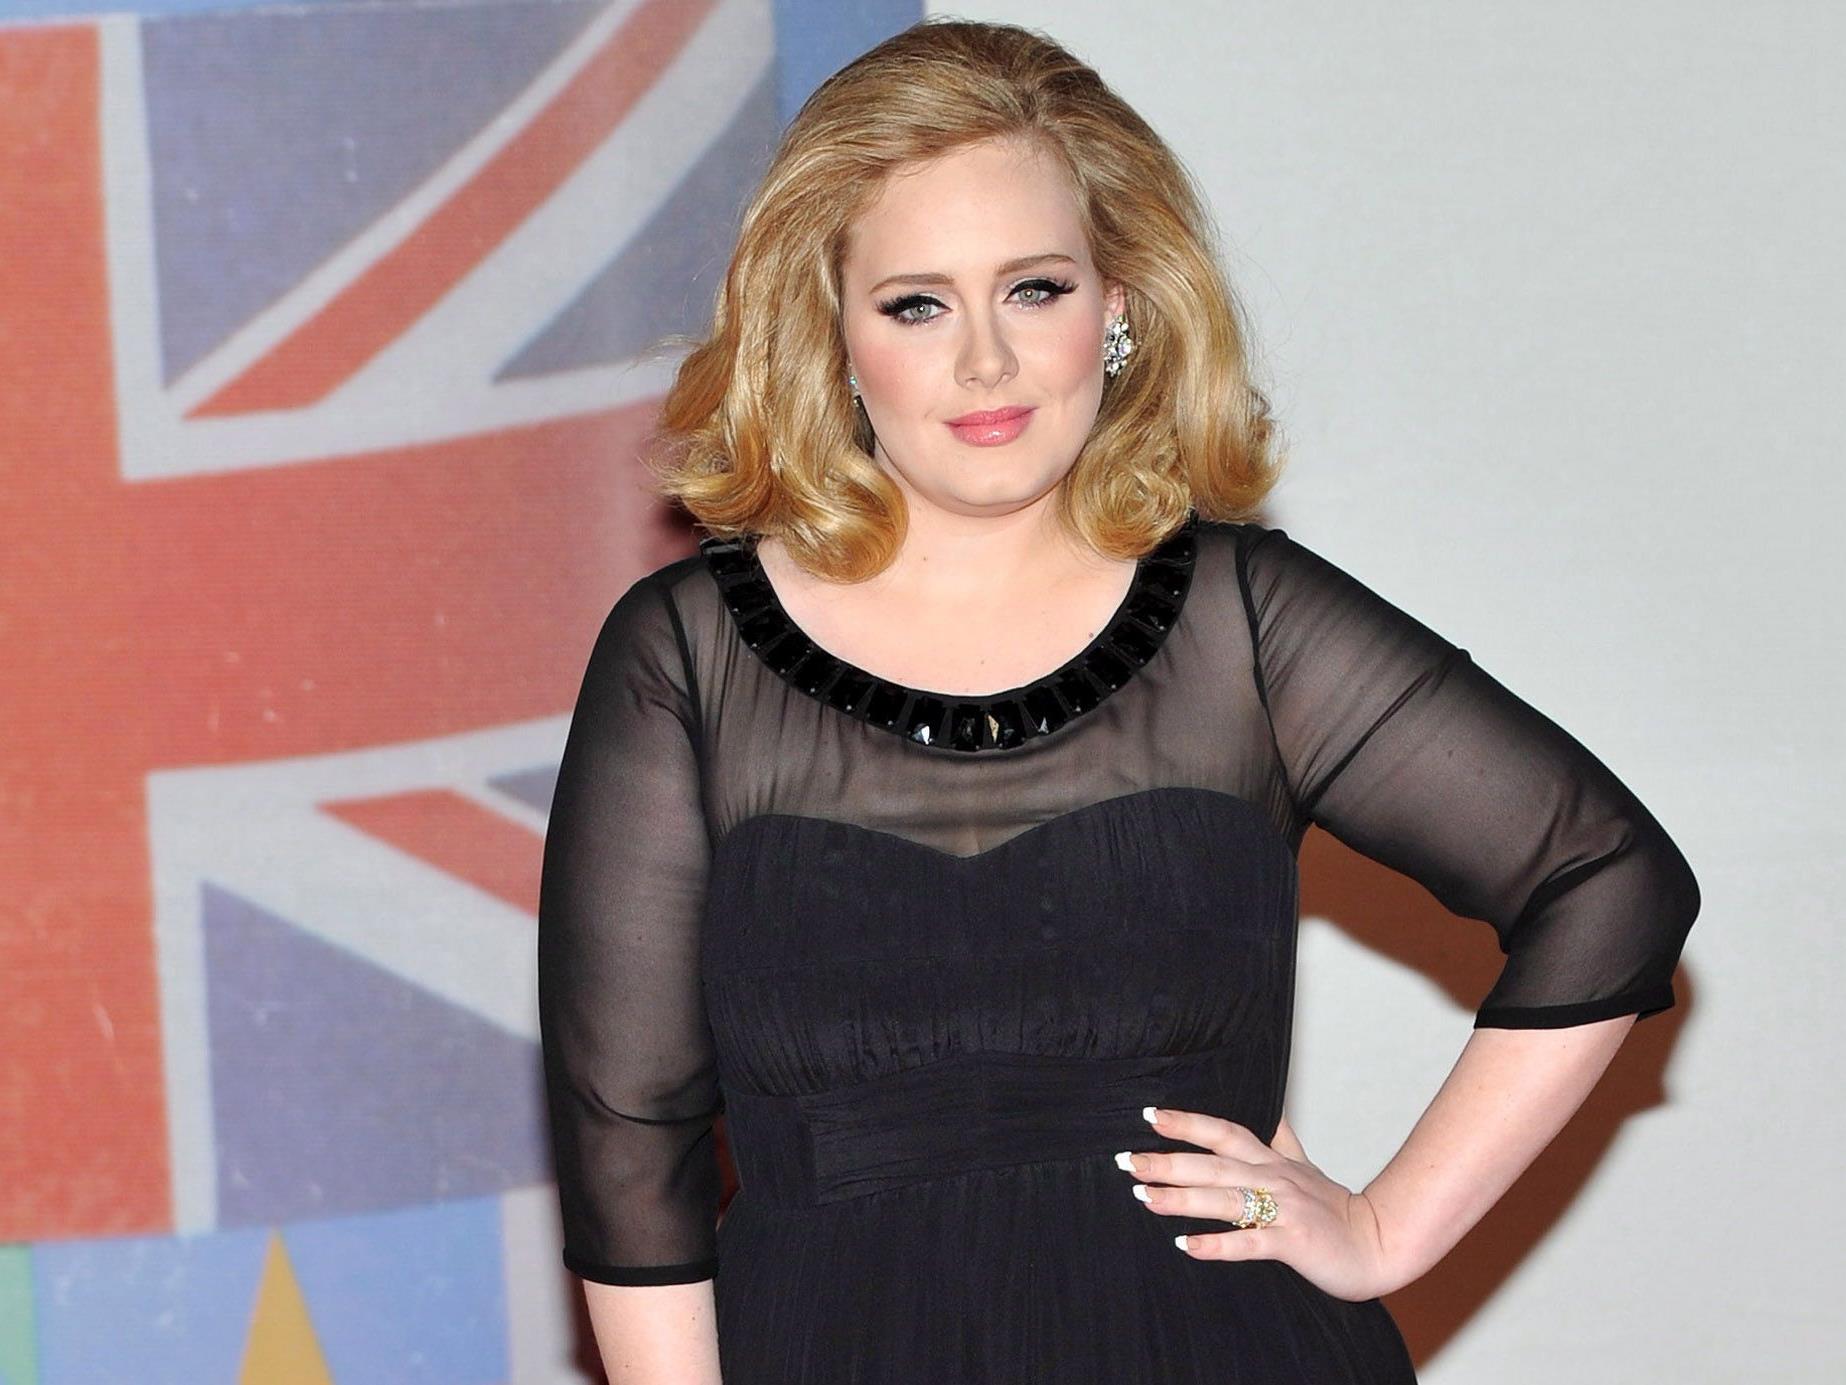 Gesangswunder Adele besitzt eine der größten Stimmen im aktuellen Musicbusiness.